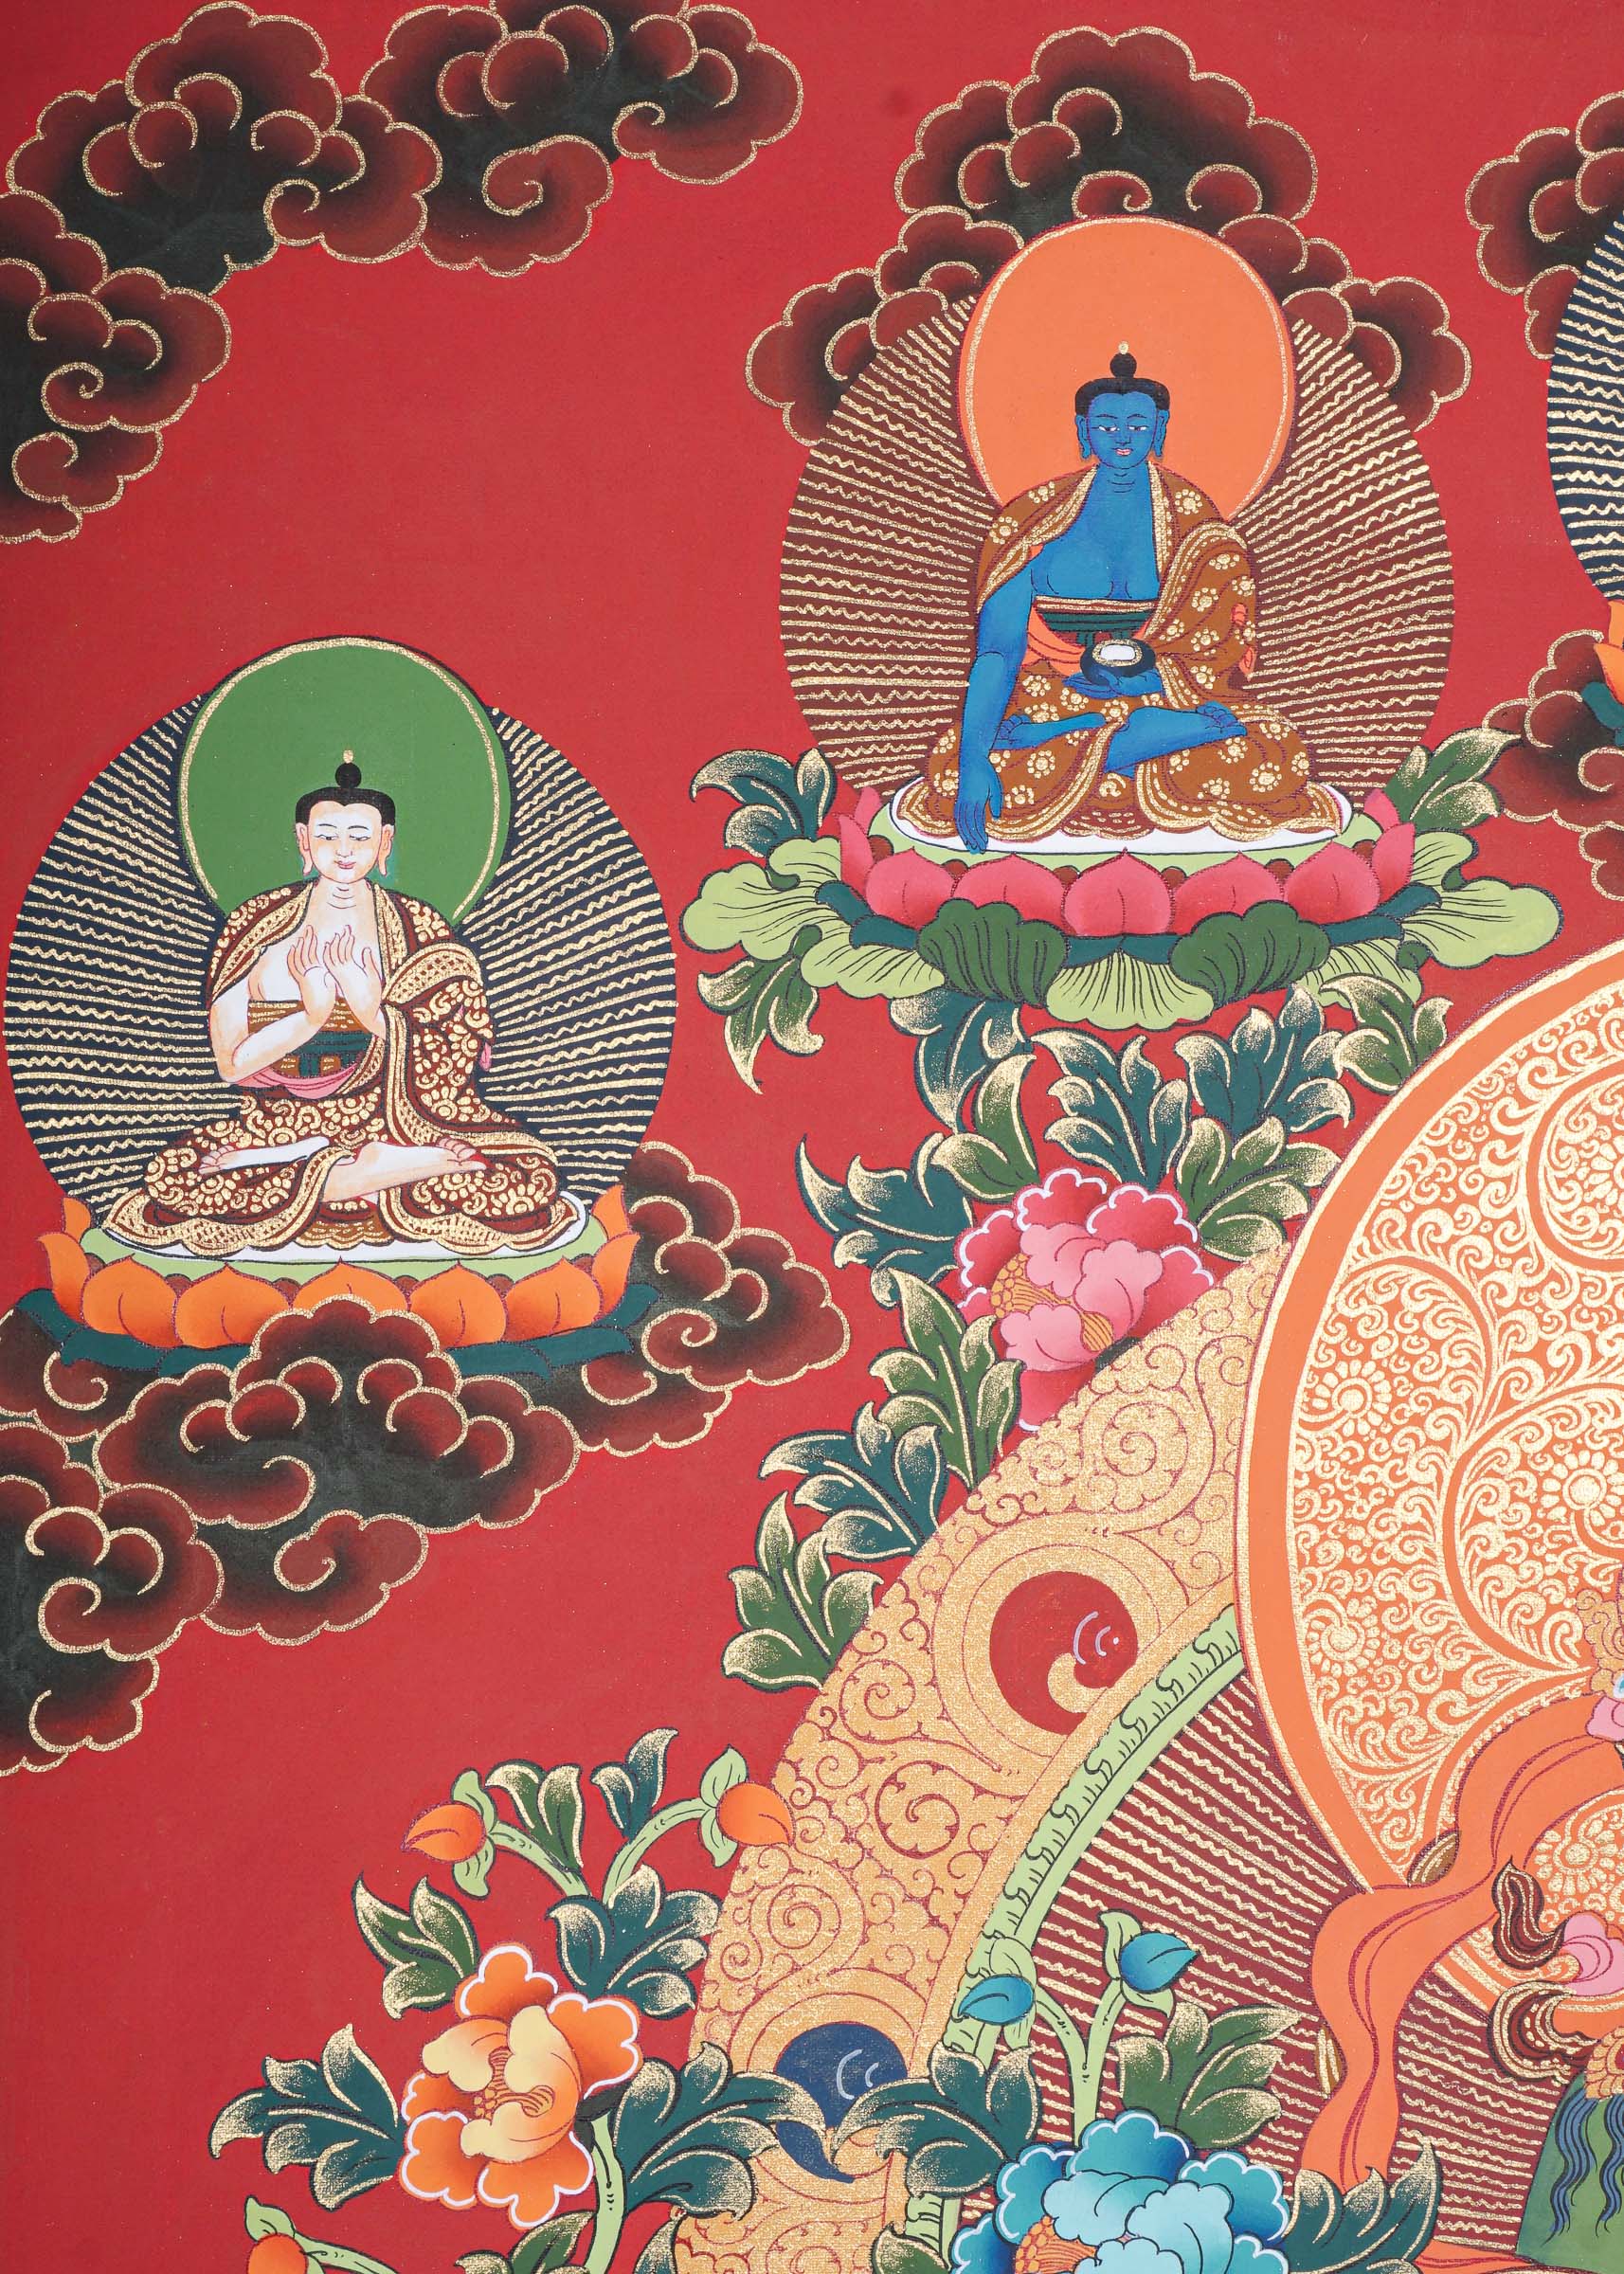 Green Tara Thangka Painting for prayer and meditation.